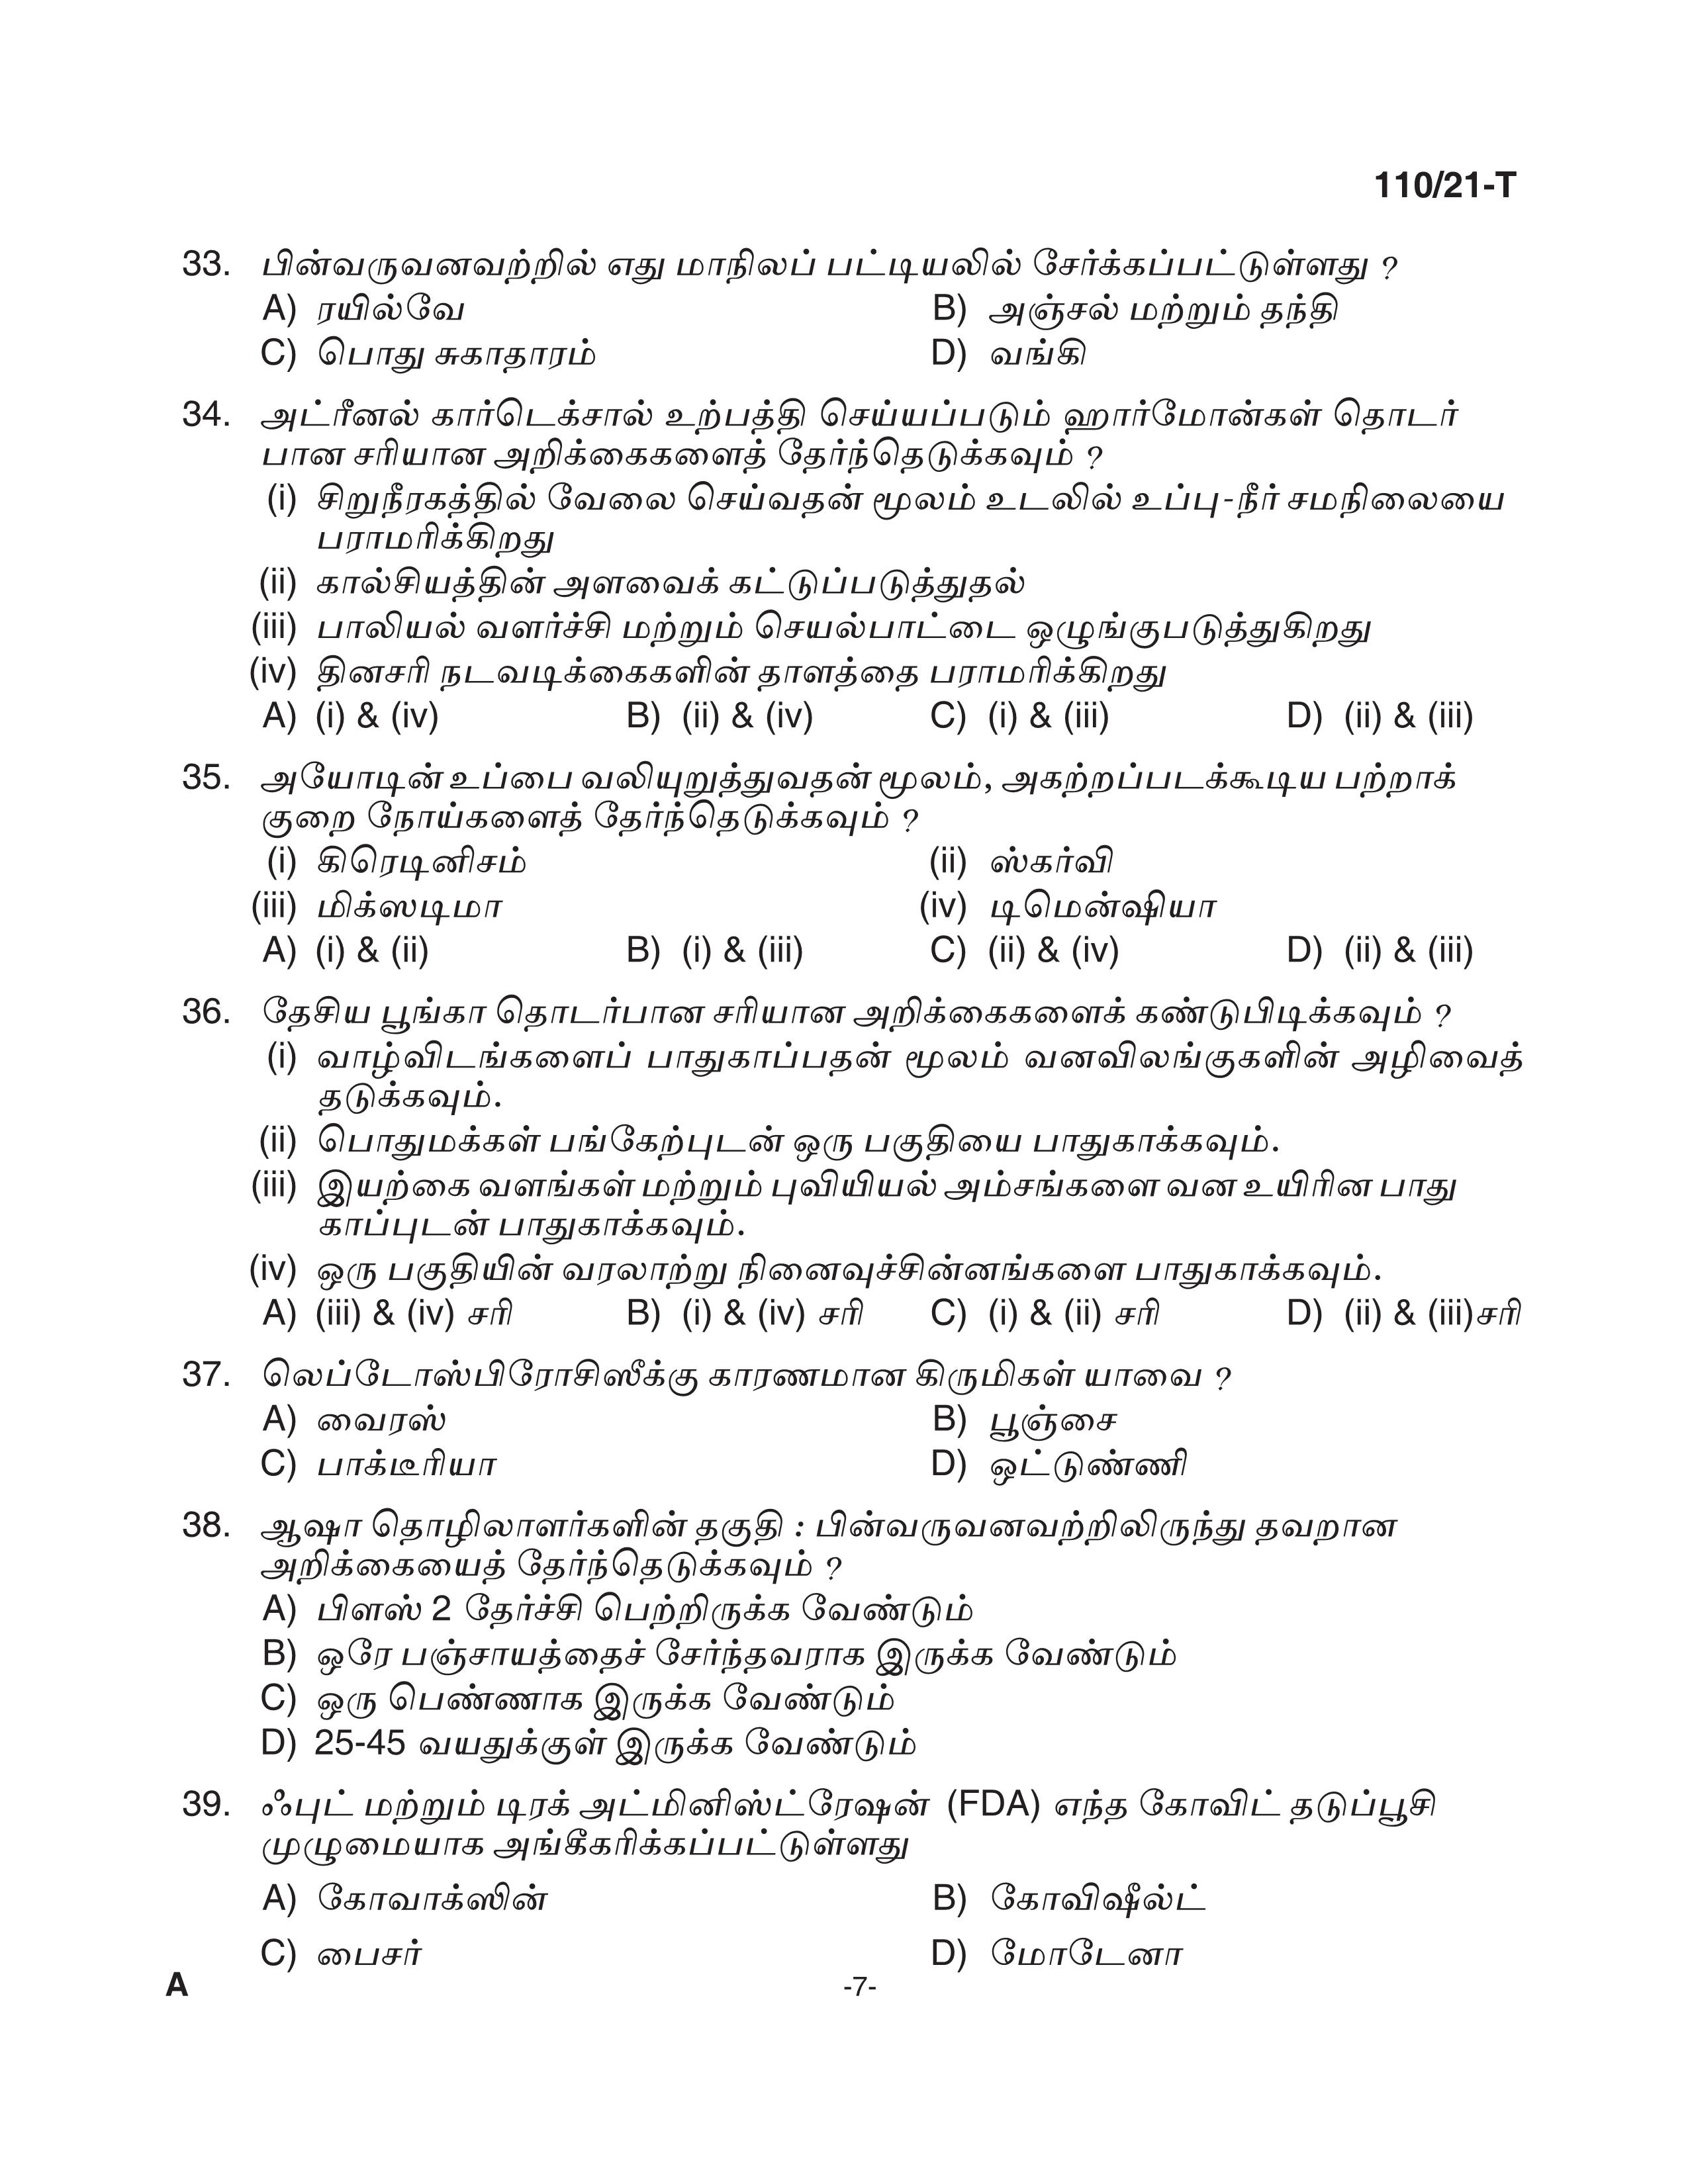 KPSC Assistant Grade II Sergeant Tamil Exam 2021 Code 1102021 T 6